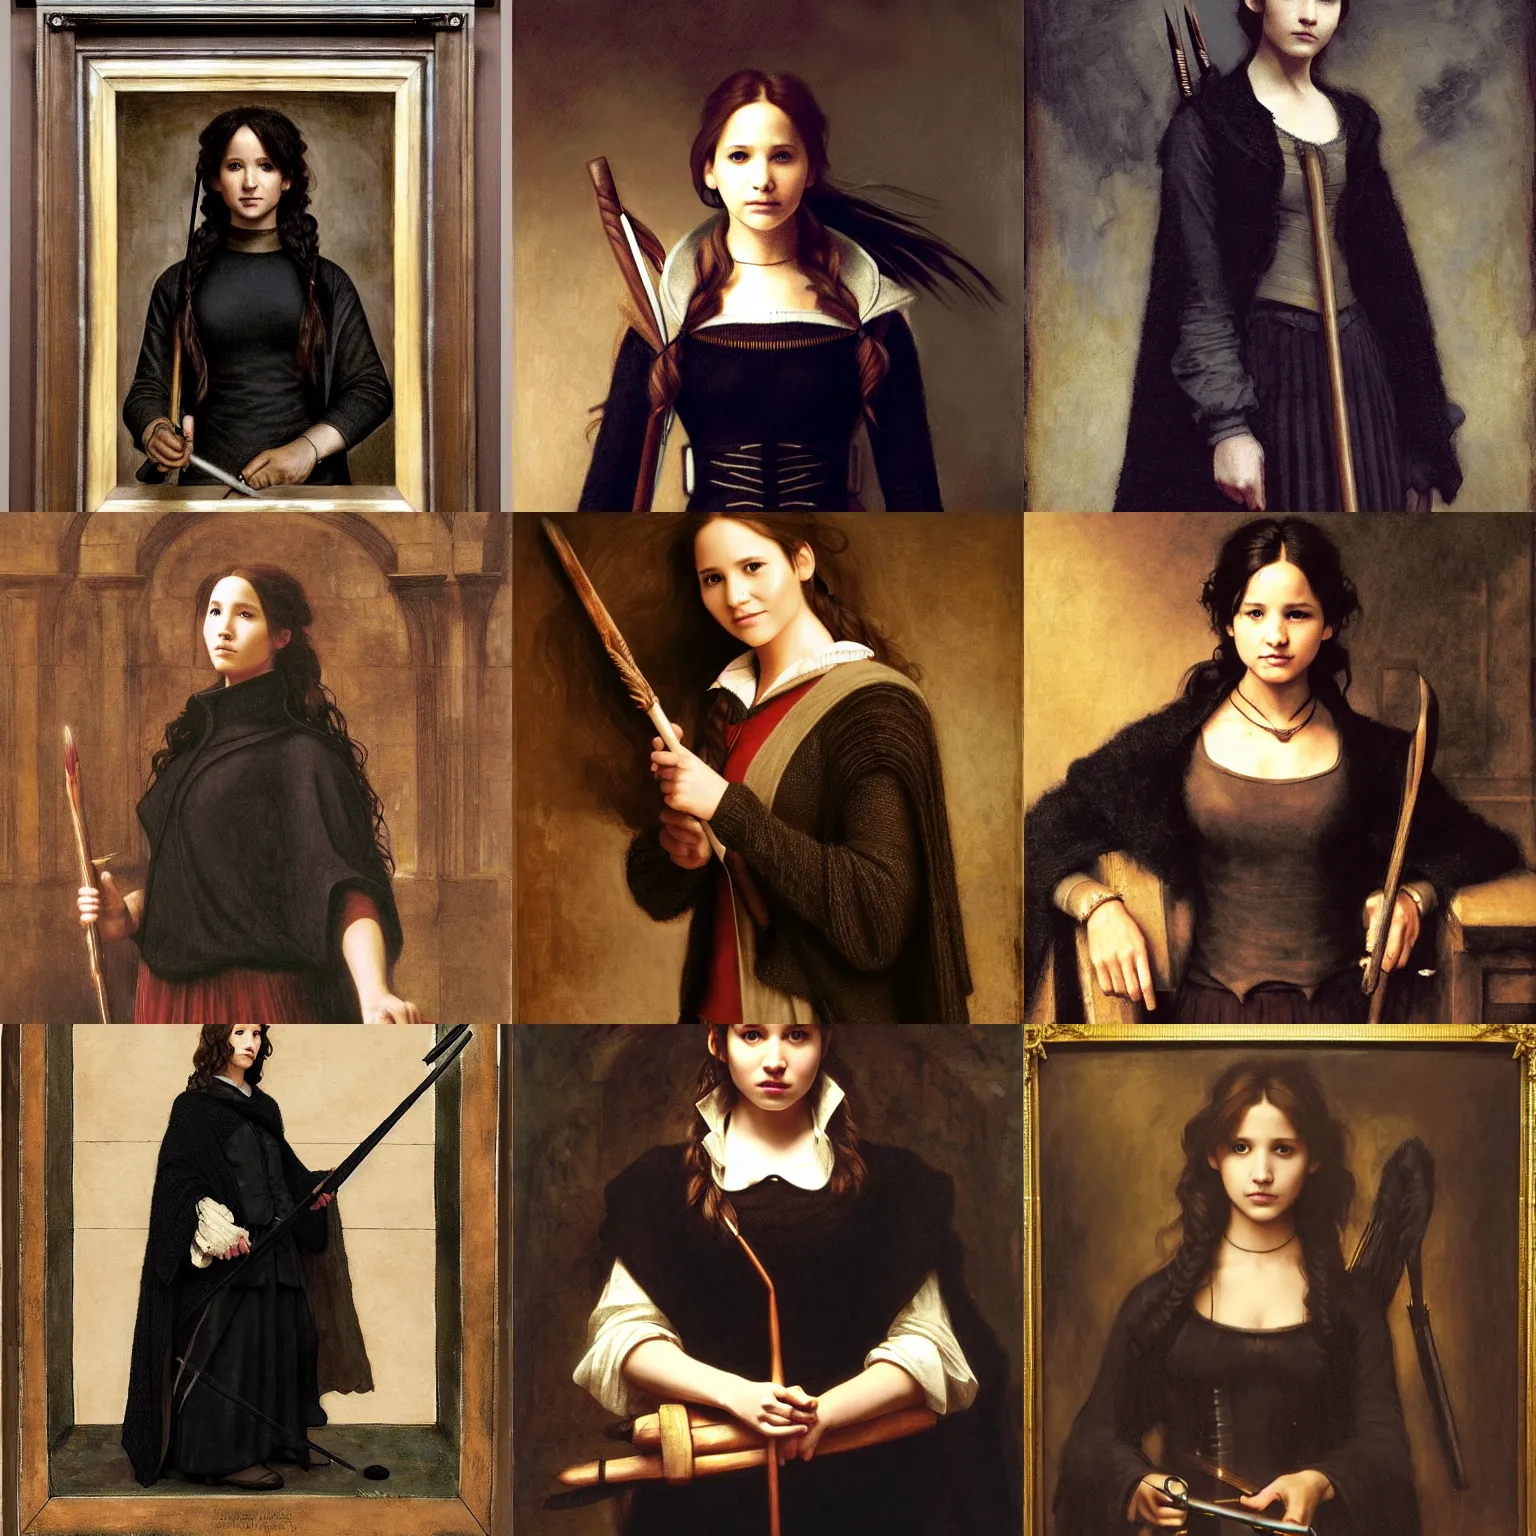 Prompt: ( katniss everdeen ) as a hermione granger, black wool sweater, cloak, skirt, holding wand, hogwarts great hall, portrait by rembrandt, bouguereau, rutkowski